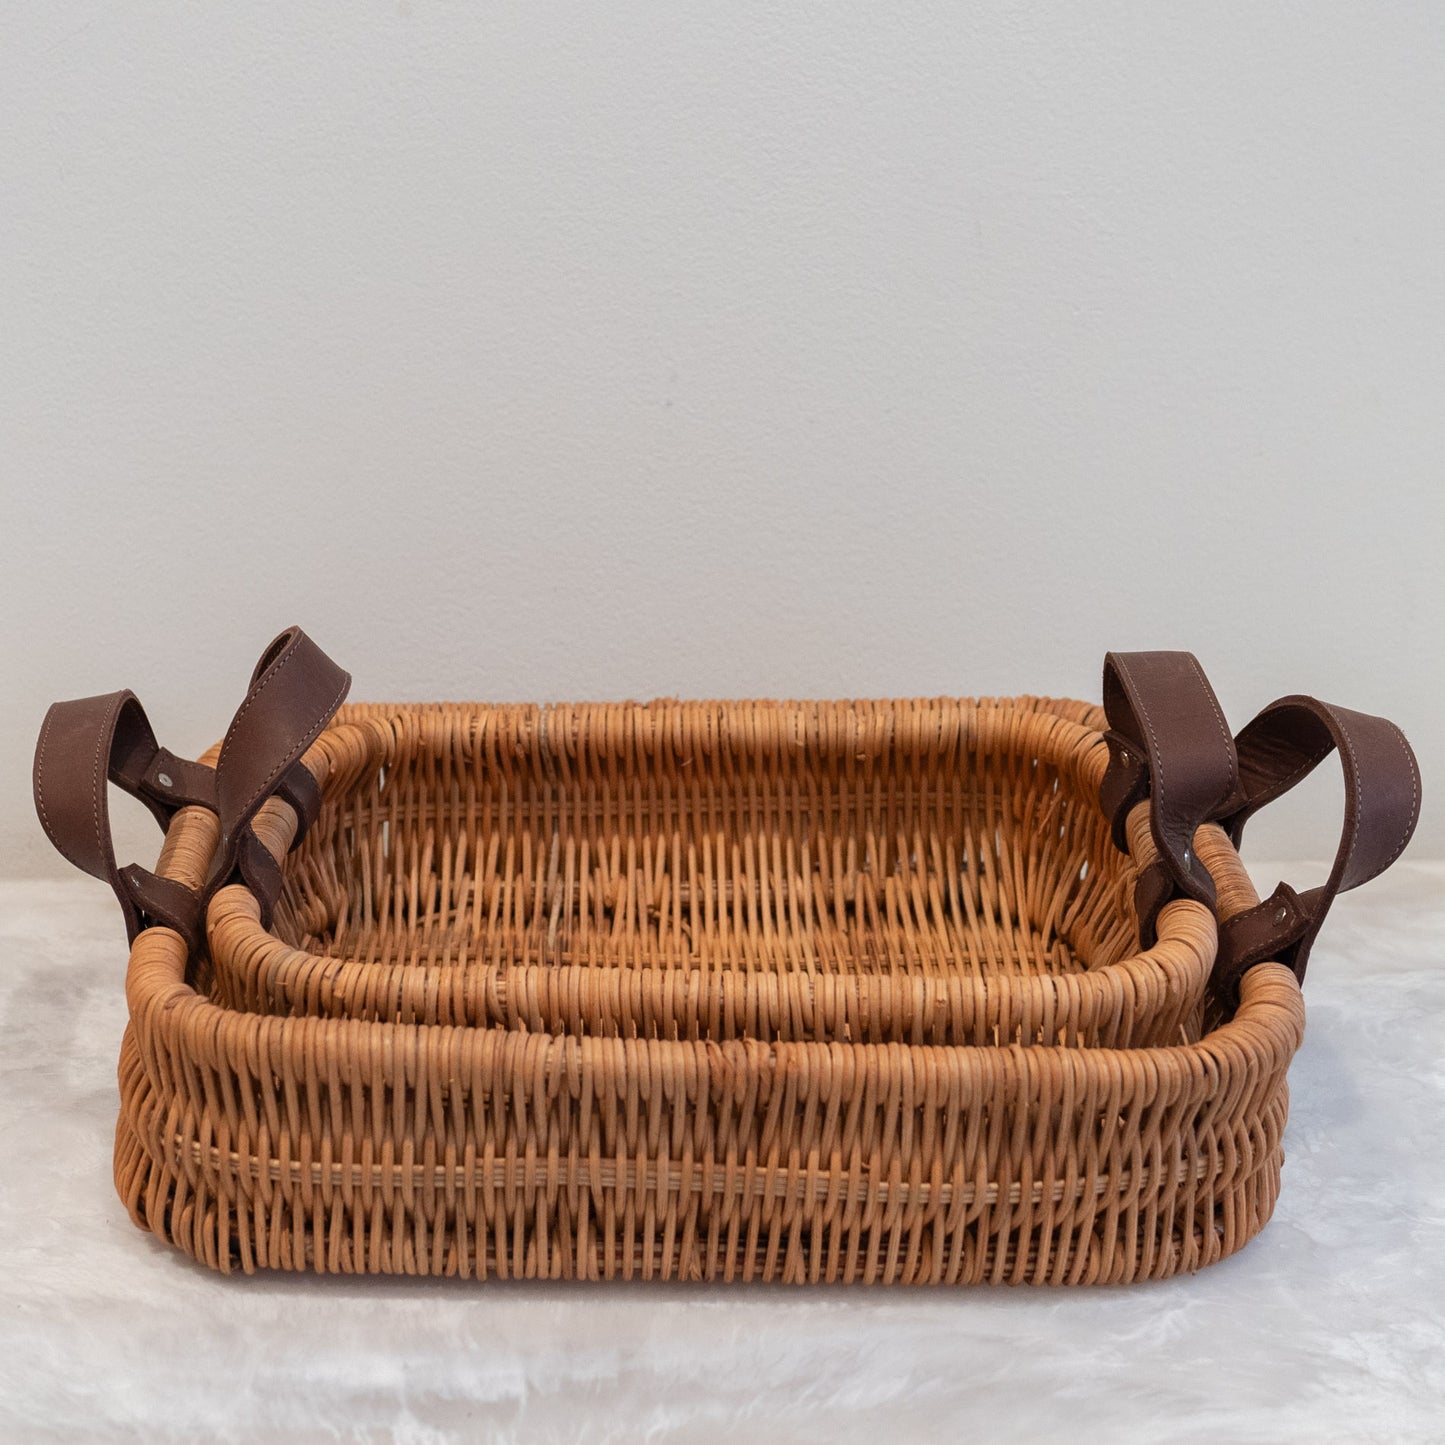 Yakima Rectangular Baskets